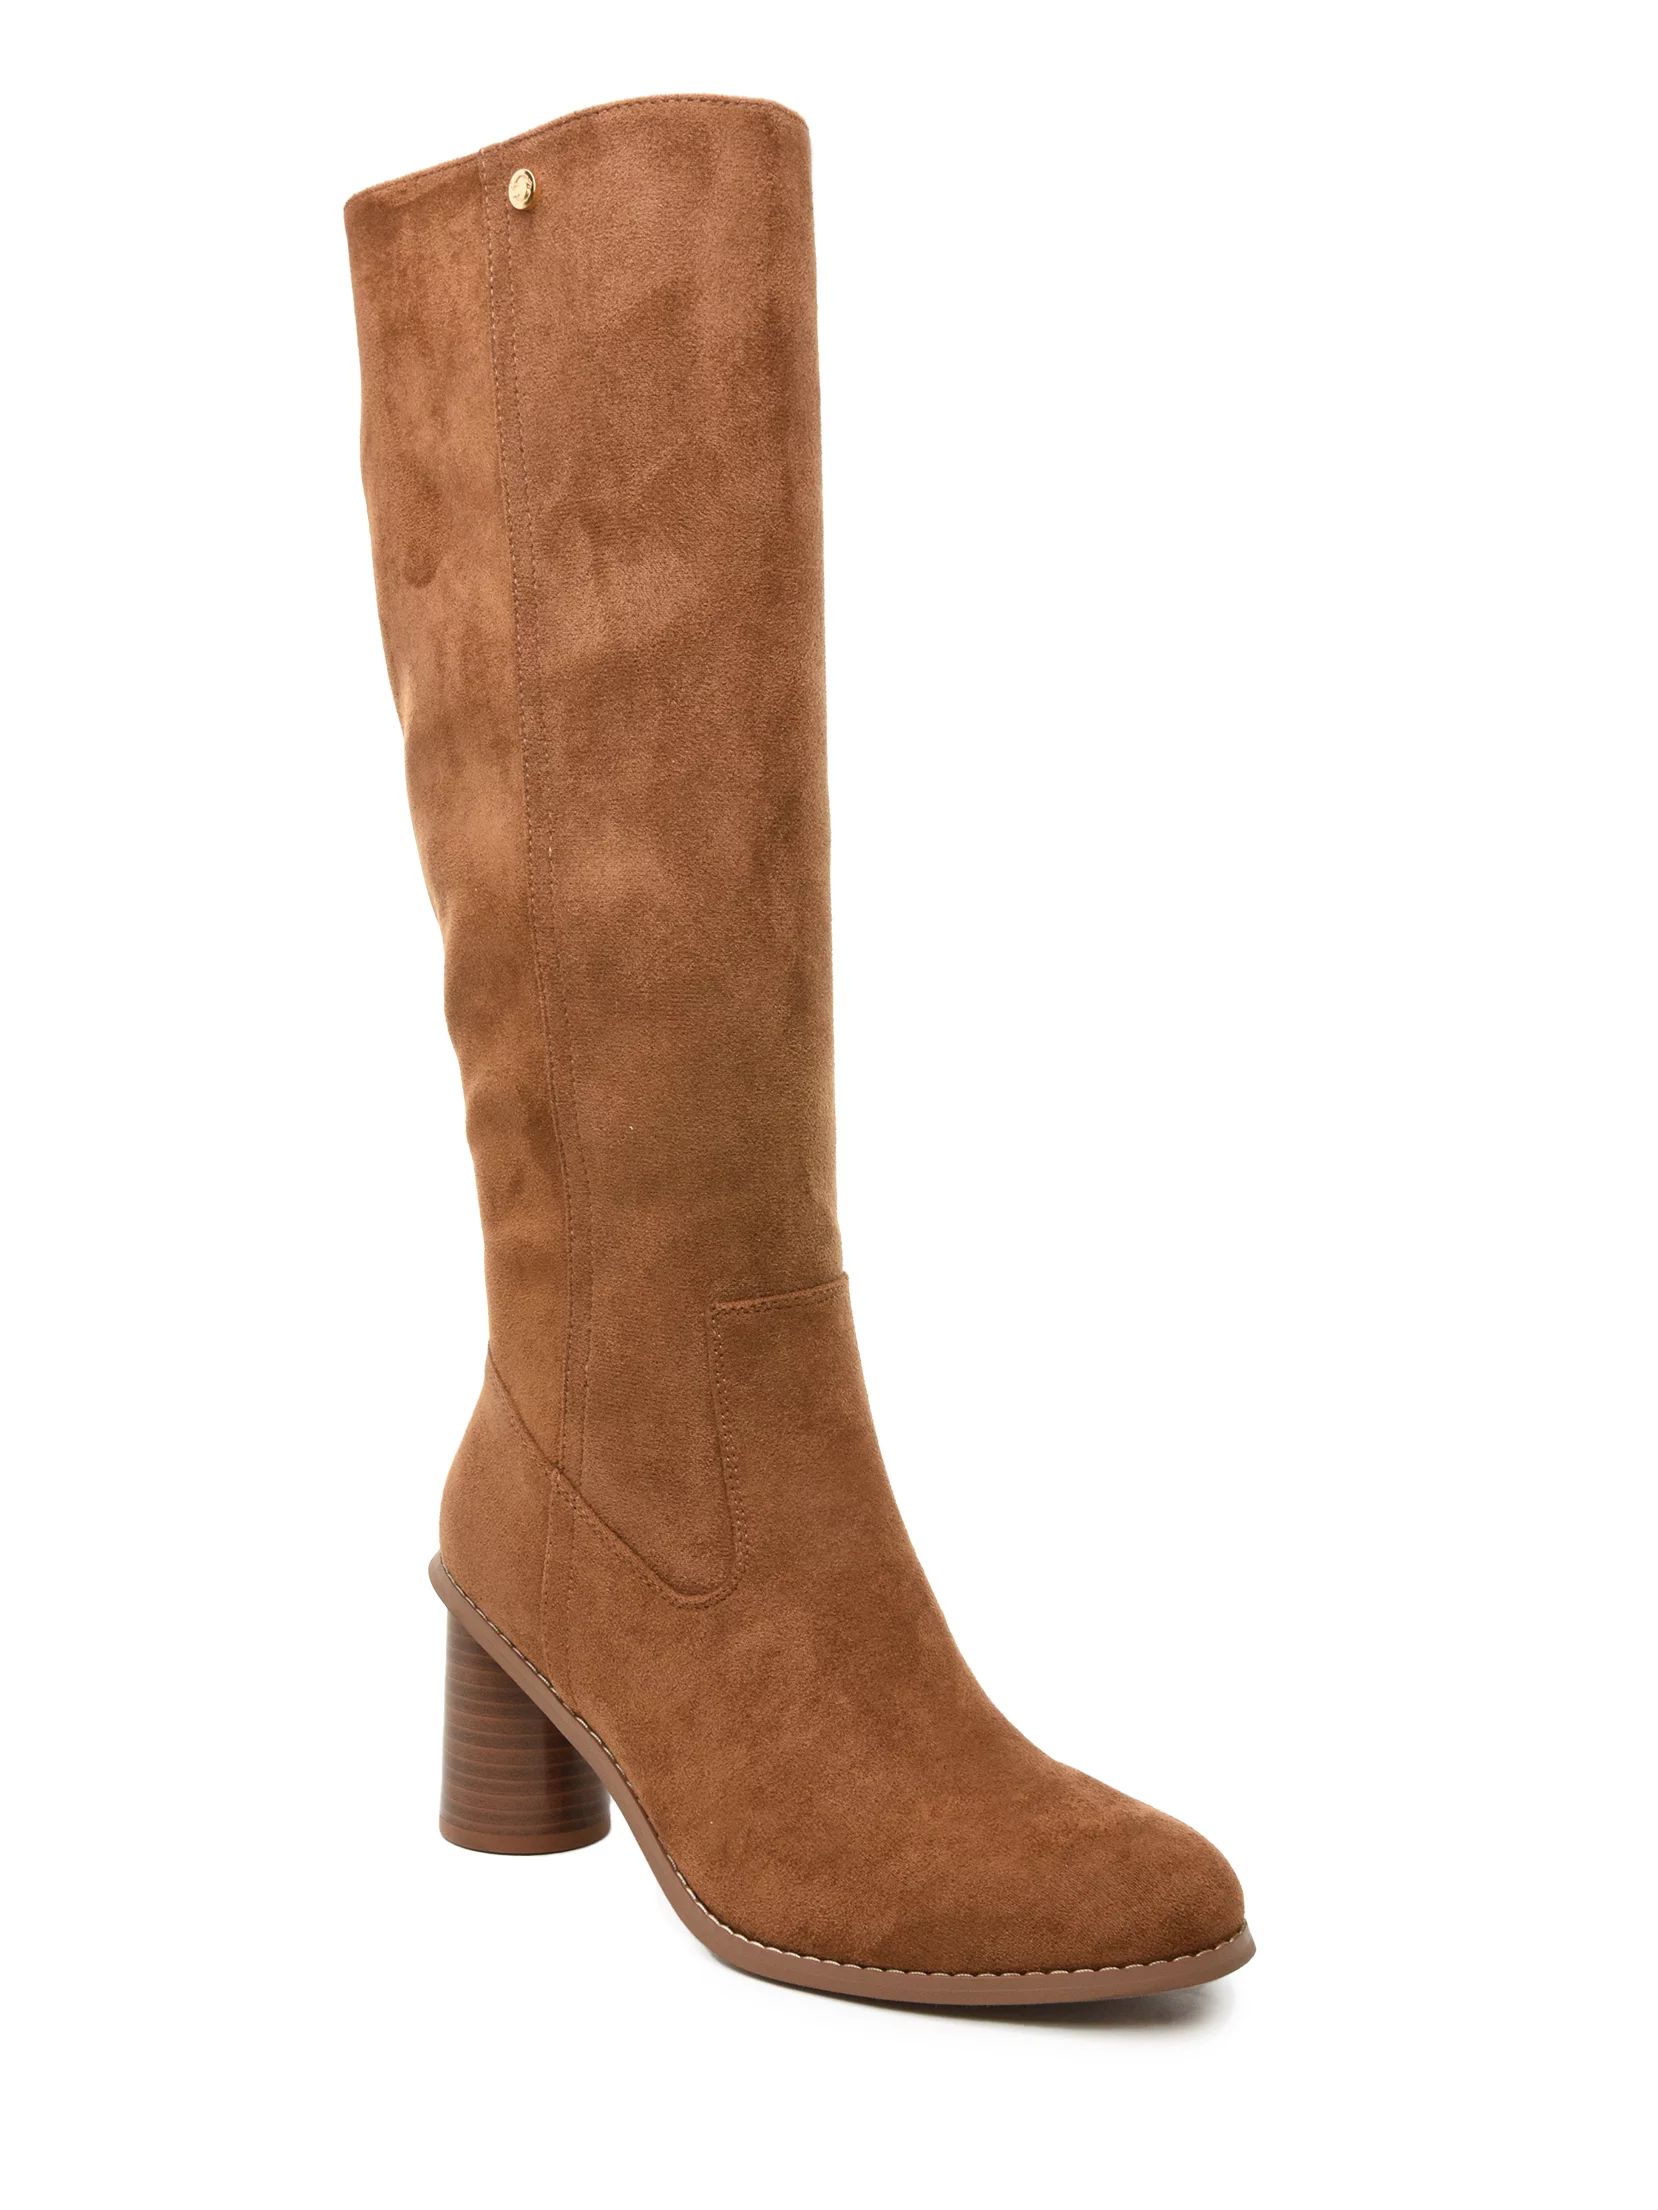 C. Wonder Women's Microsuede Knee High Heeled Boot - Walmart.com | Walmart (US)